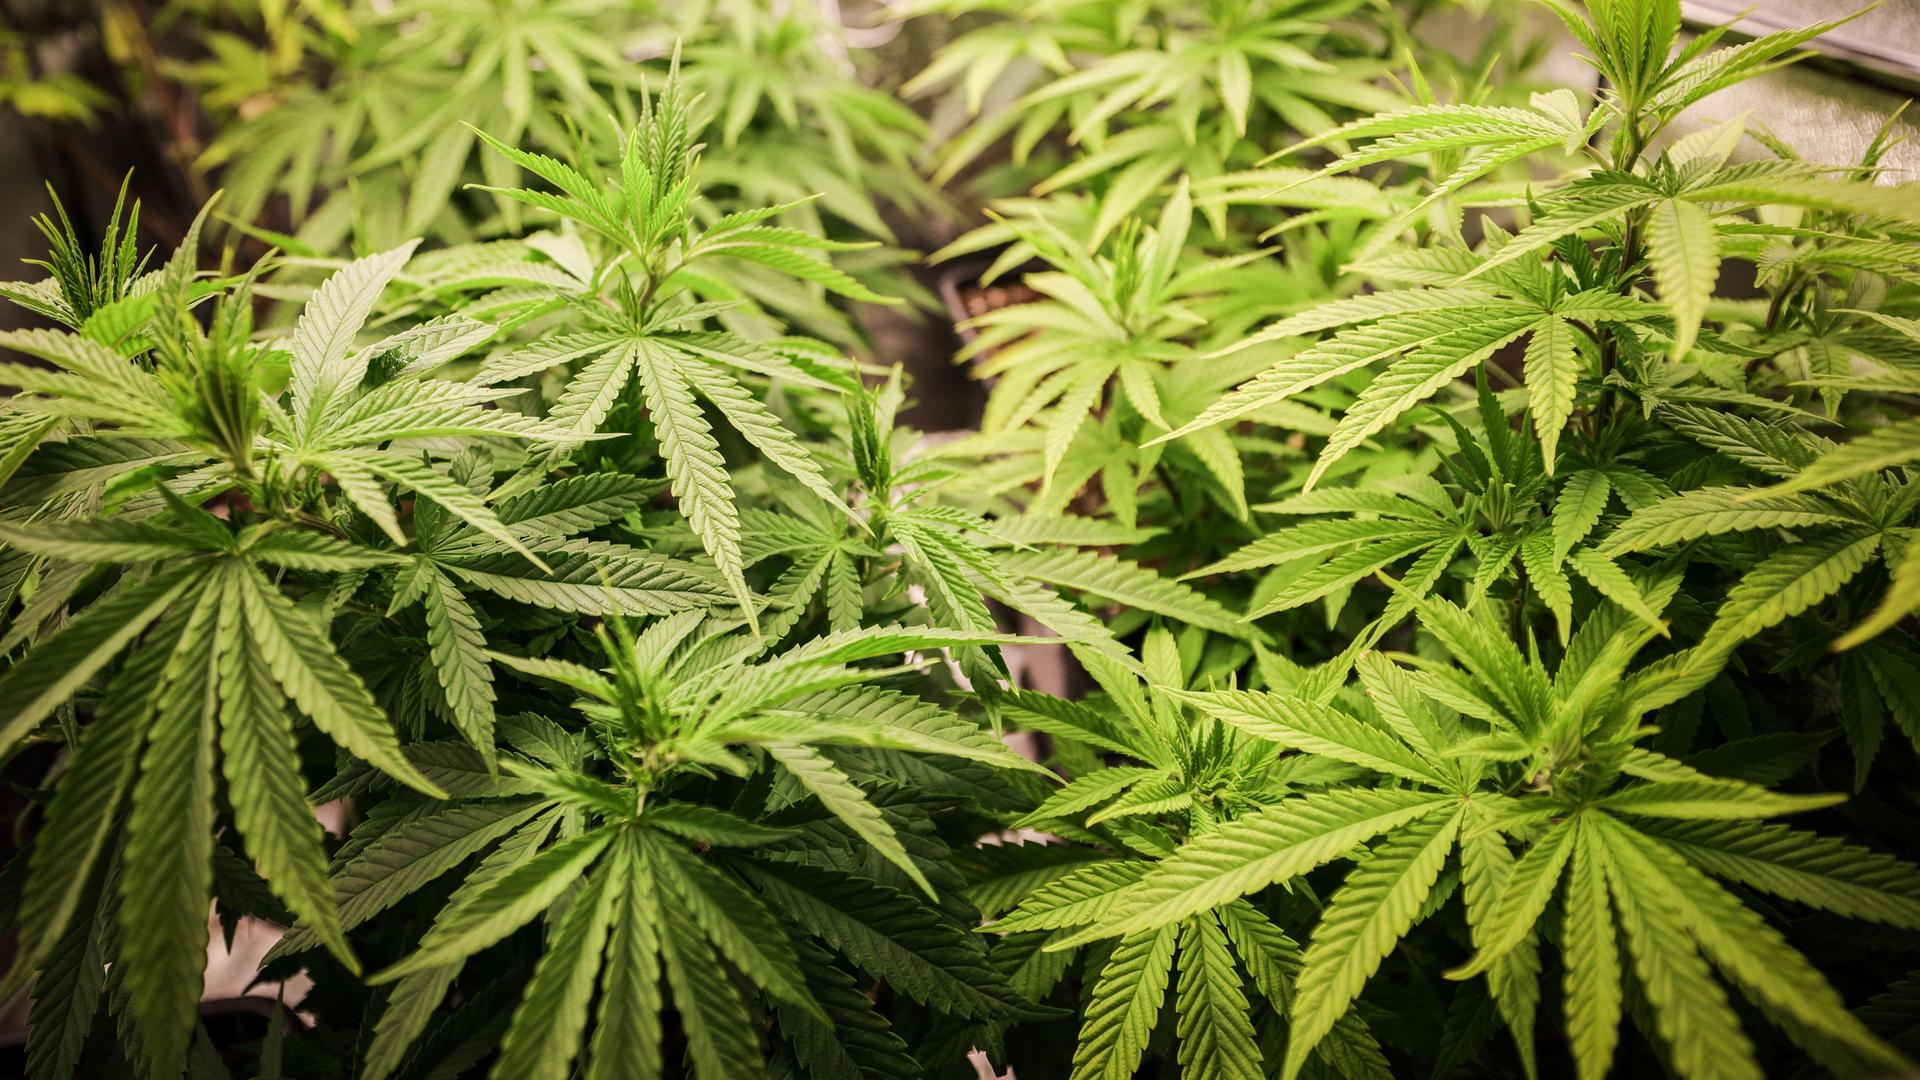 Cannabispflanzen (ca. 4 Wochen alt) in ihrer Wachstumsphase stehen in einem Aufzuchtszelt unter künstlicher Beleuchtung in einem Privatraum.